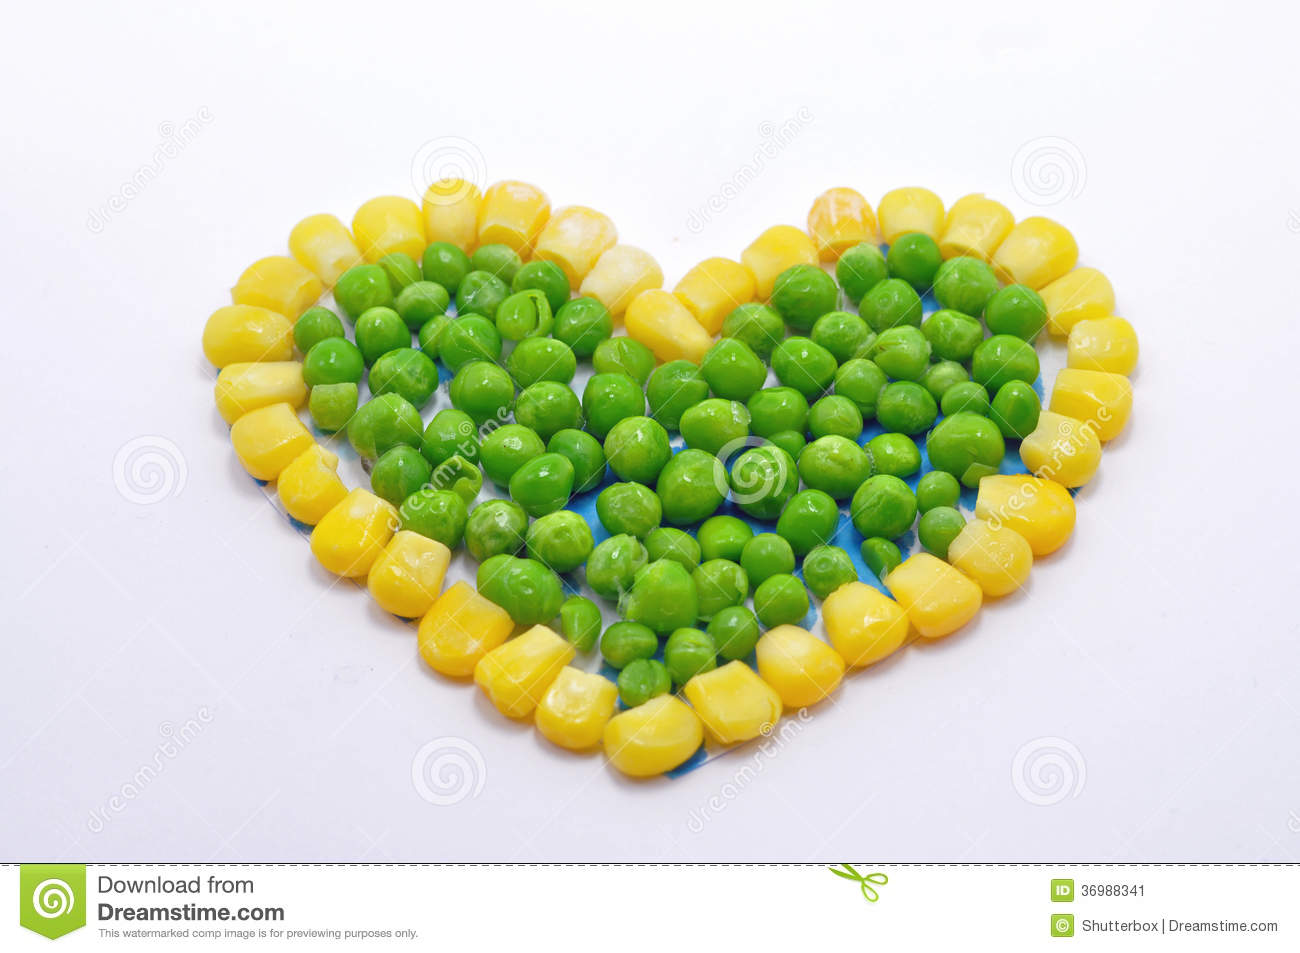 corazón-hecho-de-los-guisantes-y-del-maíz-dulce-36988341